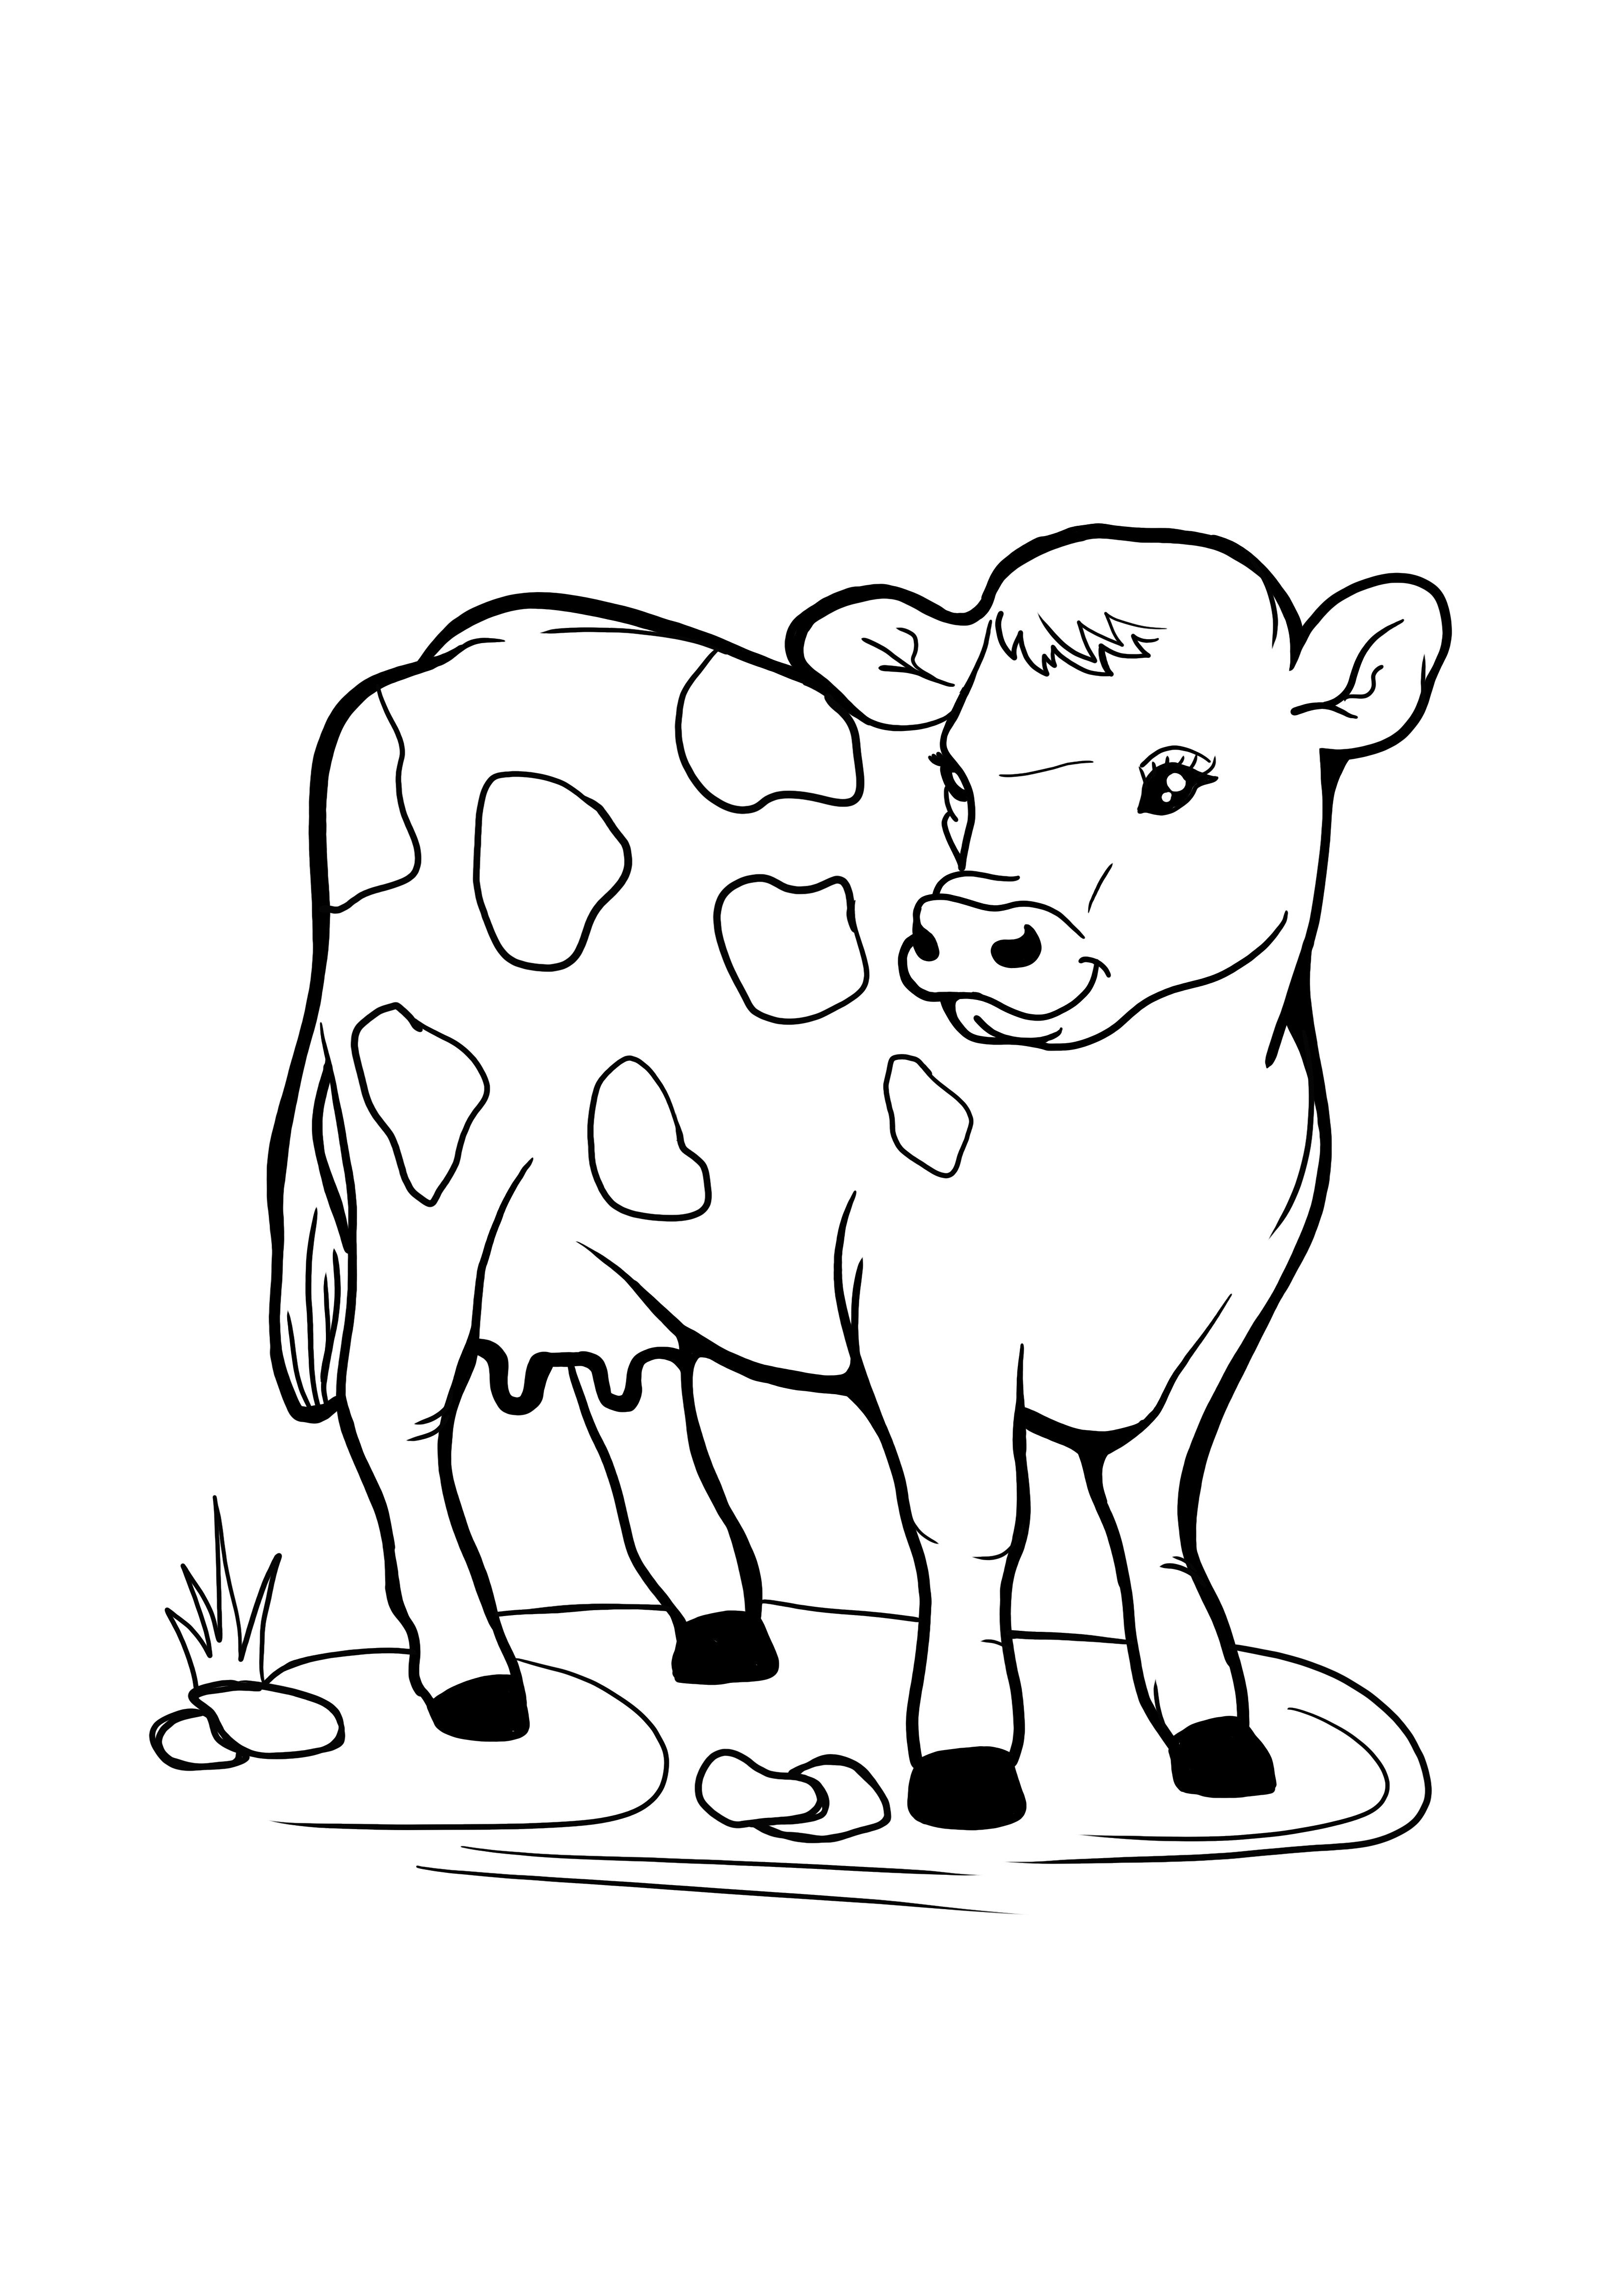 otlayan inek kolay boyama resmi